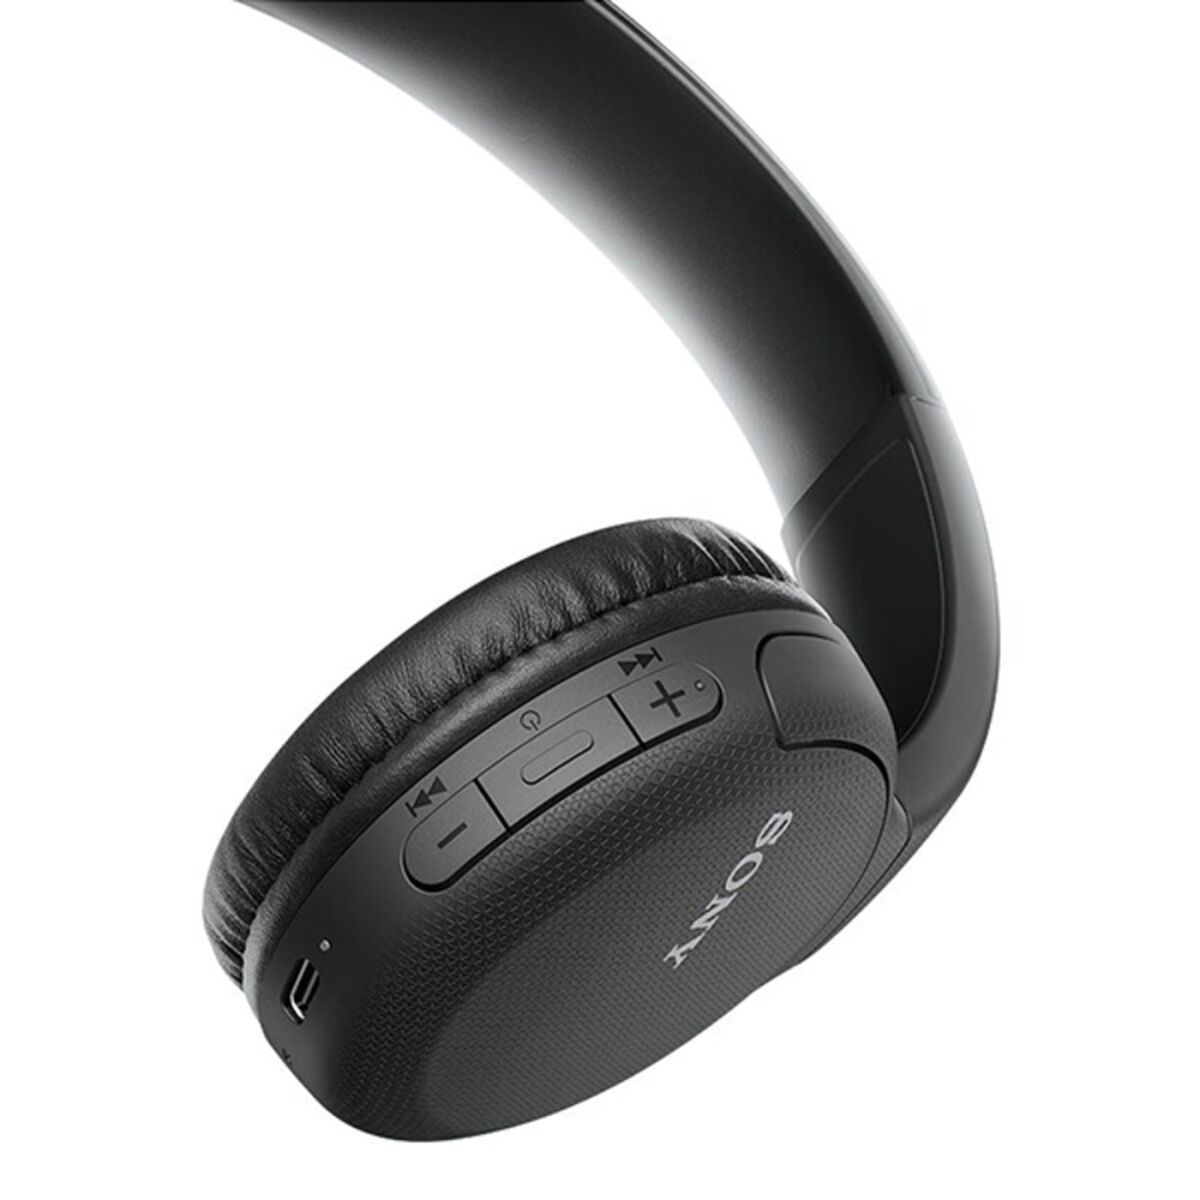 SONY WH-CH510, On-ear Kopfhörer blau Bluetooth